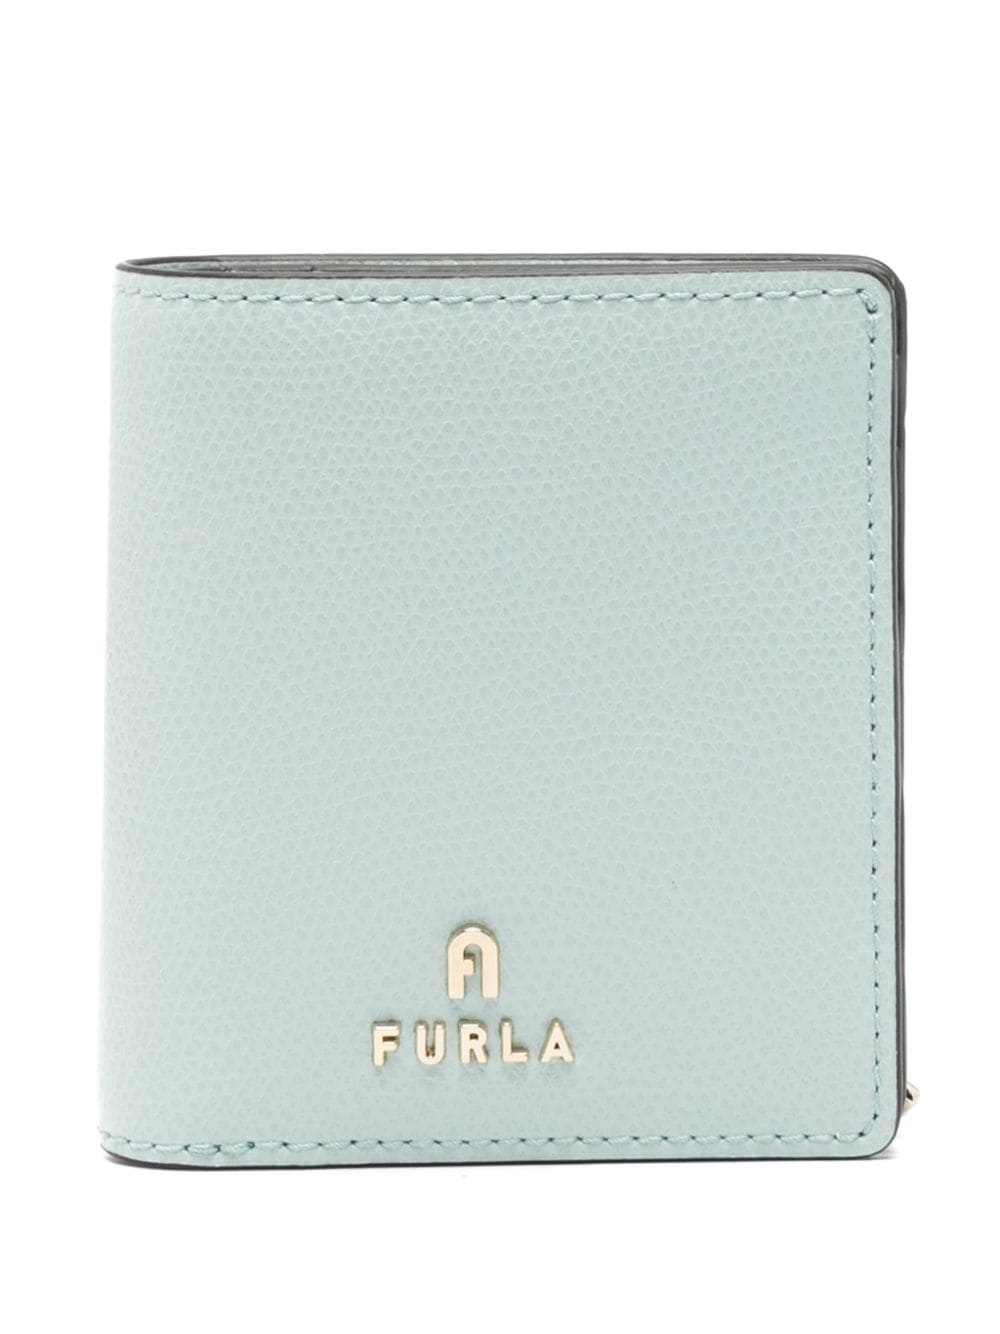 Furla Camelia S bi-fold wallet - Blau